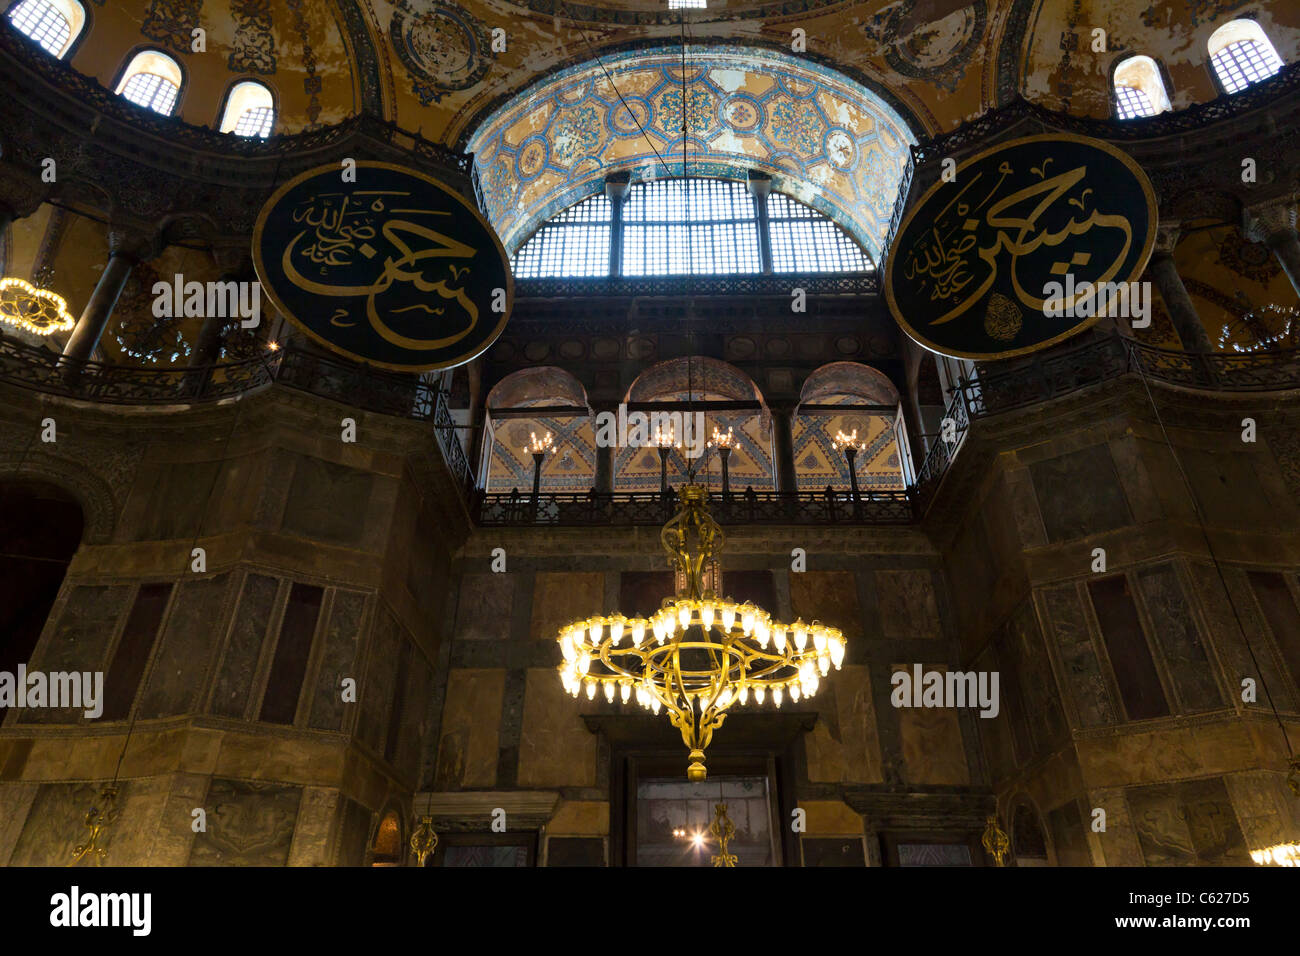 Beau balcon avec arcs, plafond peint et de chandeliers.Intérieur de la mosquée Sainte-Sophie et le musée d'Istanbul, en Turquie. Banque D'Images